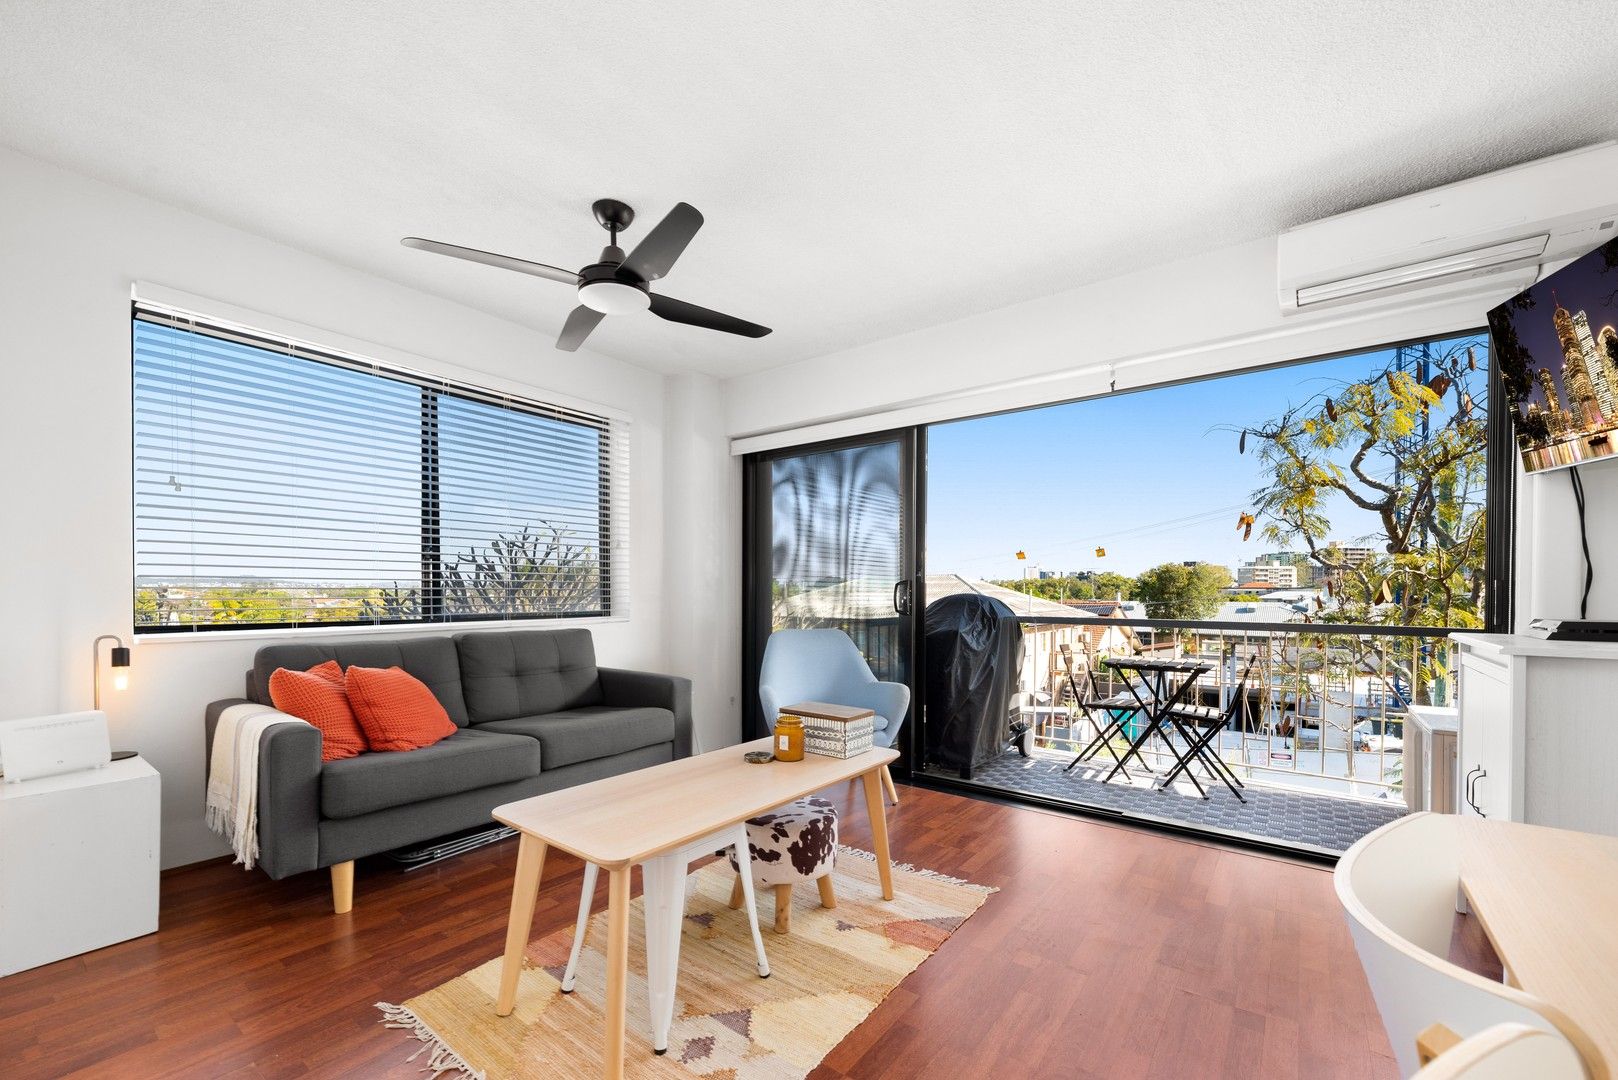 2 bedrooms Apartment / Unit / Flat in 4/2 Villiers Street NEW FARM QLD, 4005